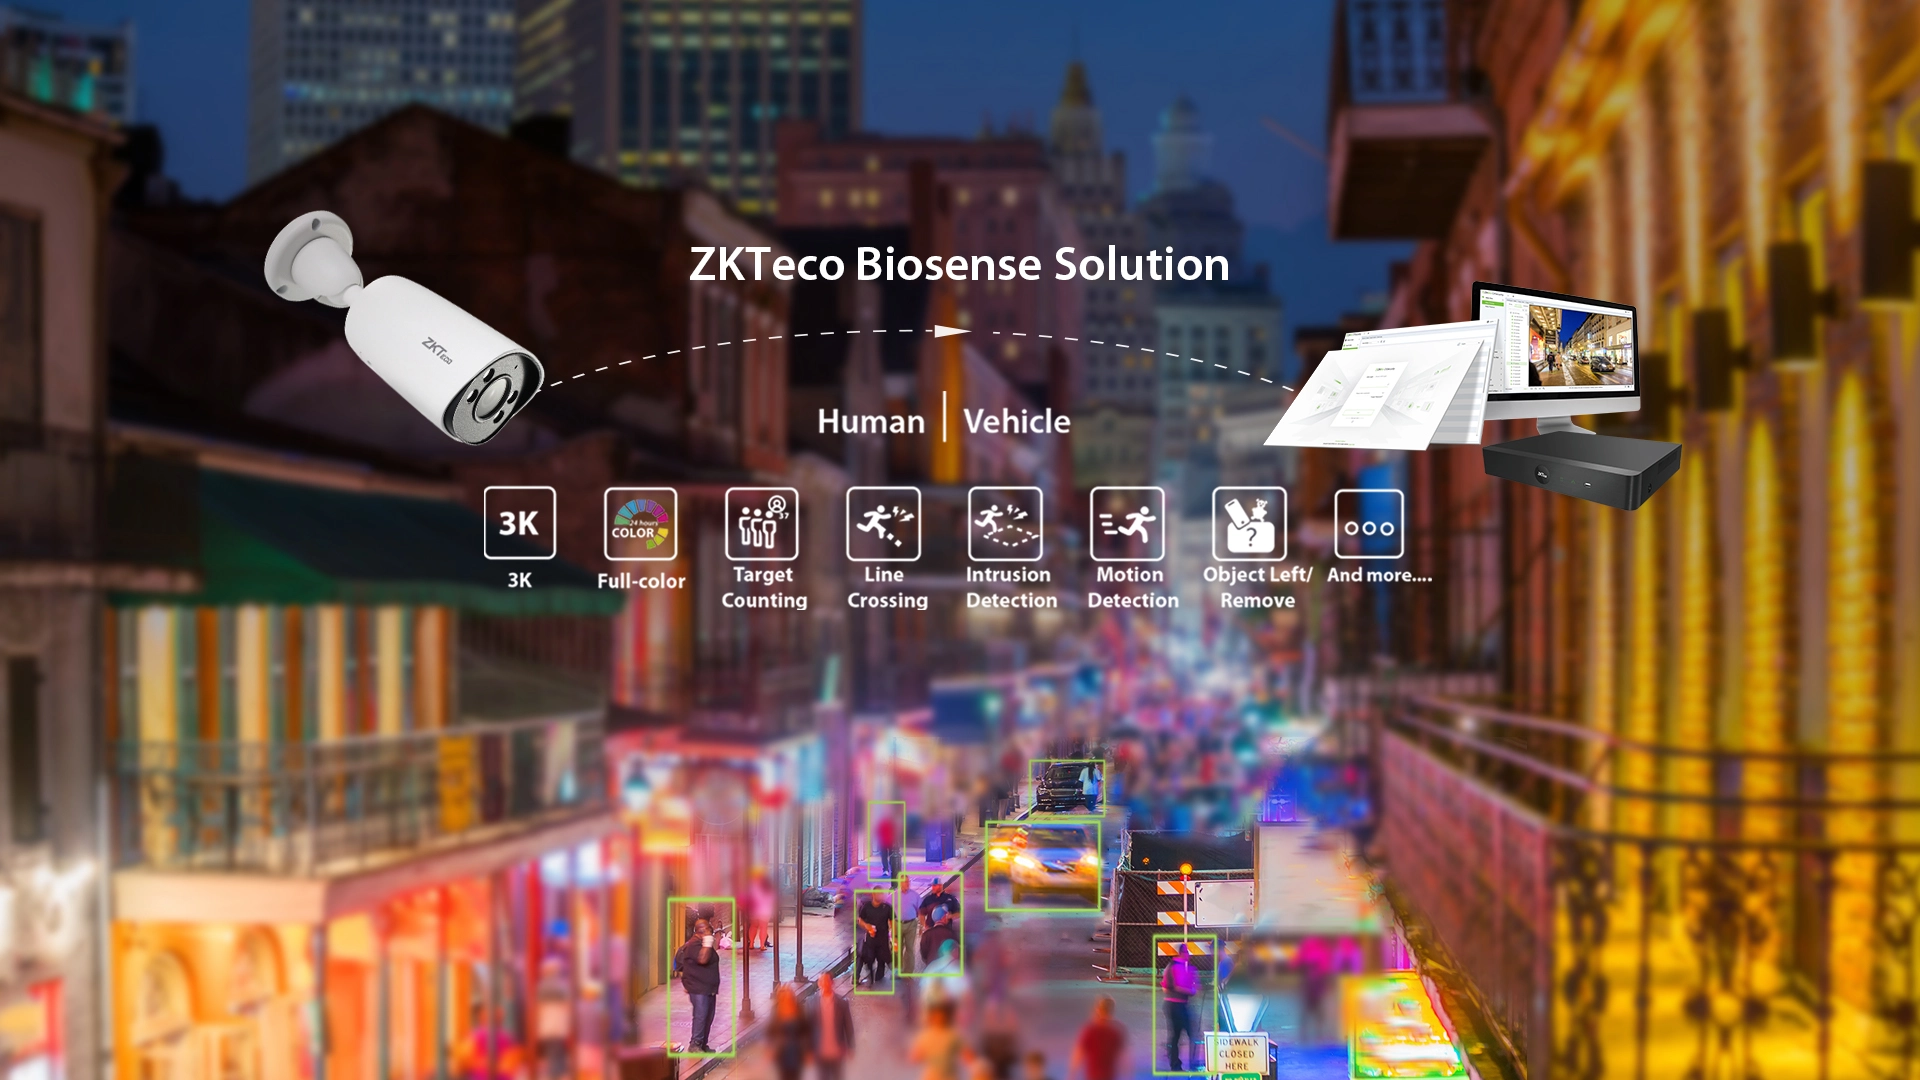 Video Surveillance
ZKTeco Software